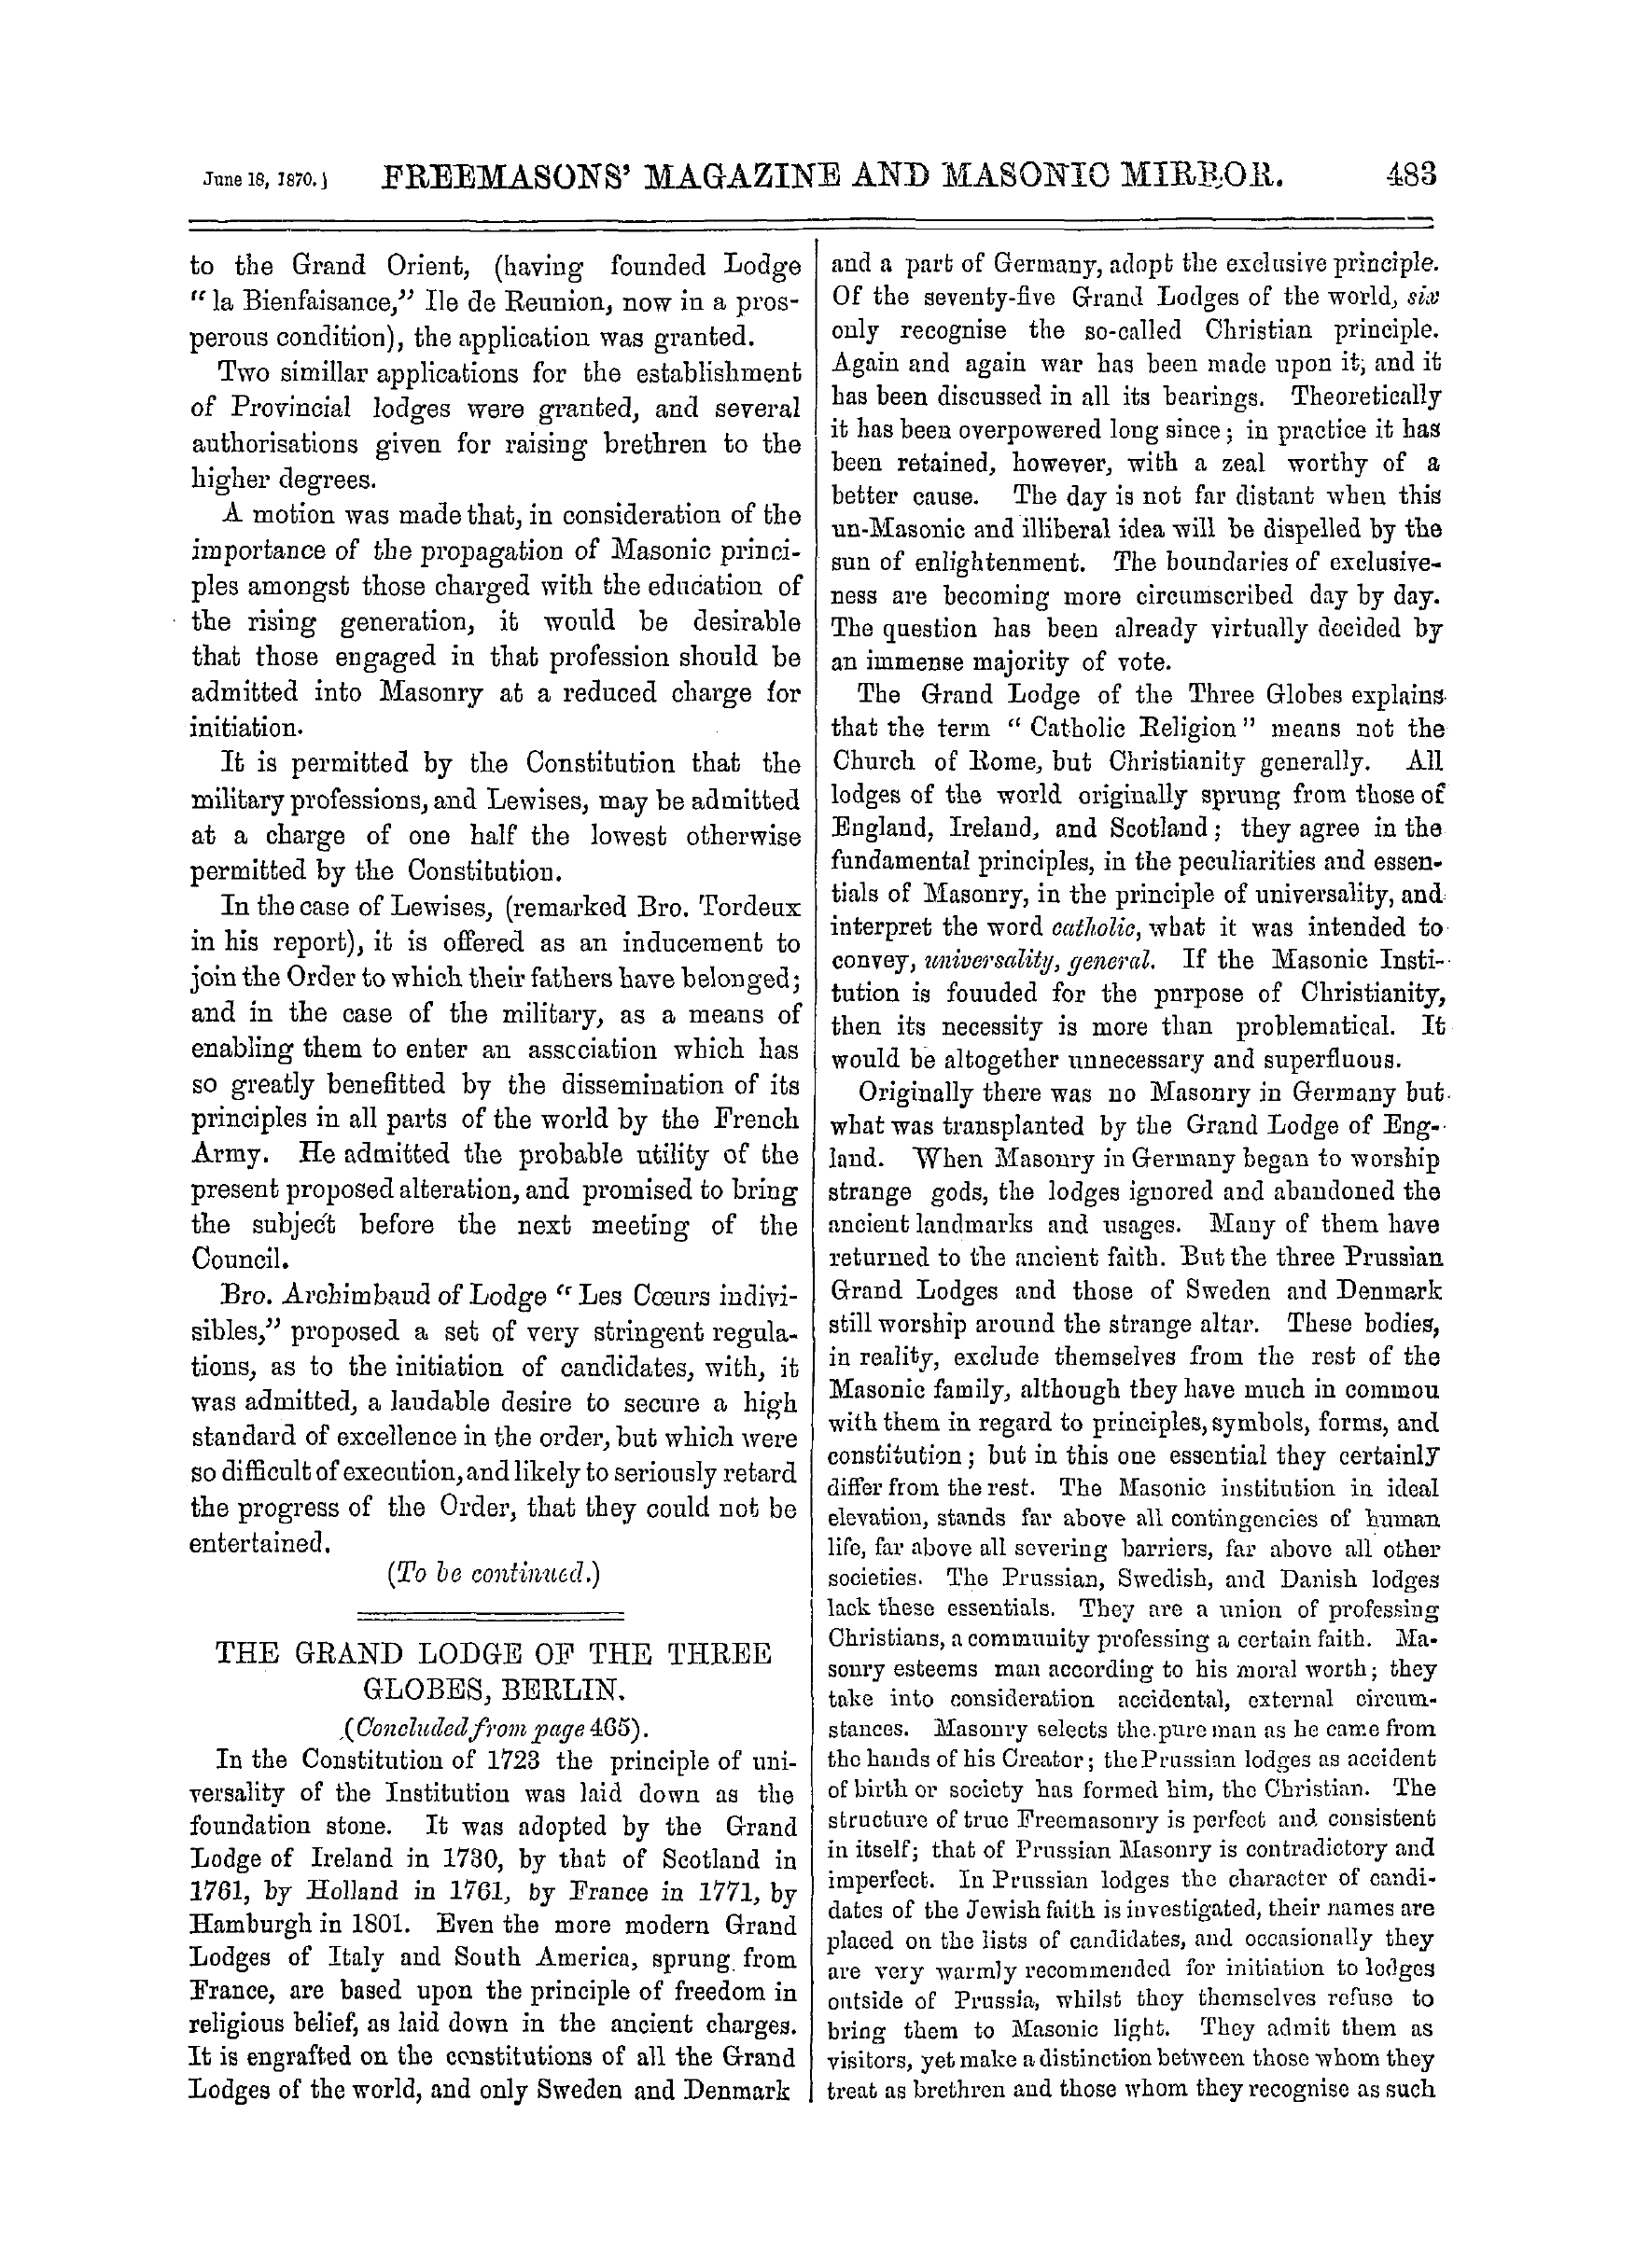 The Freemasons' Monthly Magazine: 1870-06-18 - Freemasonry In France.